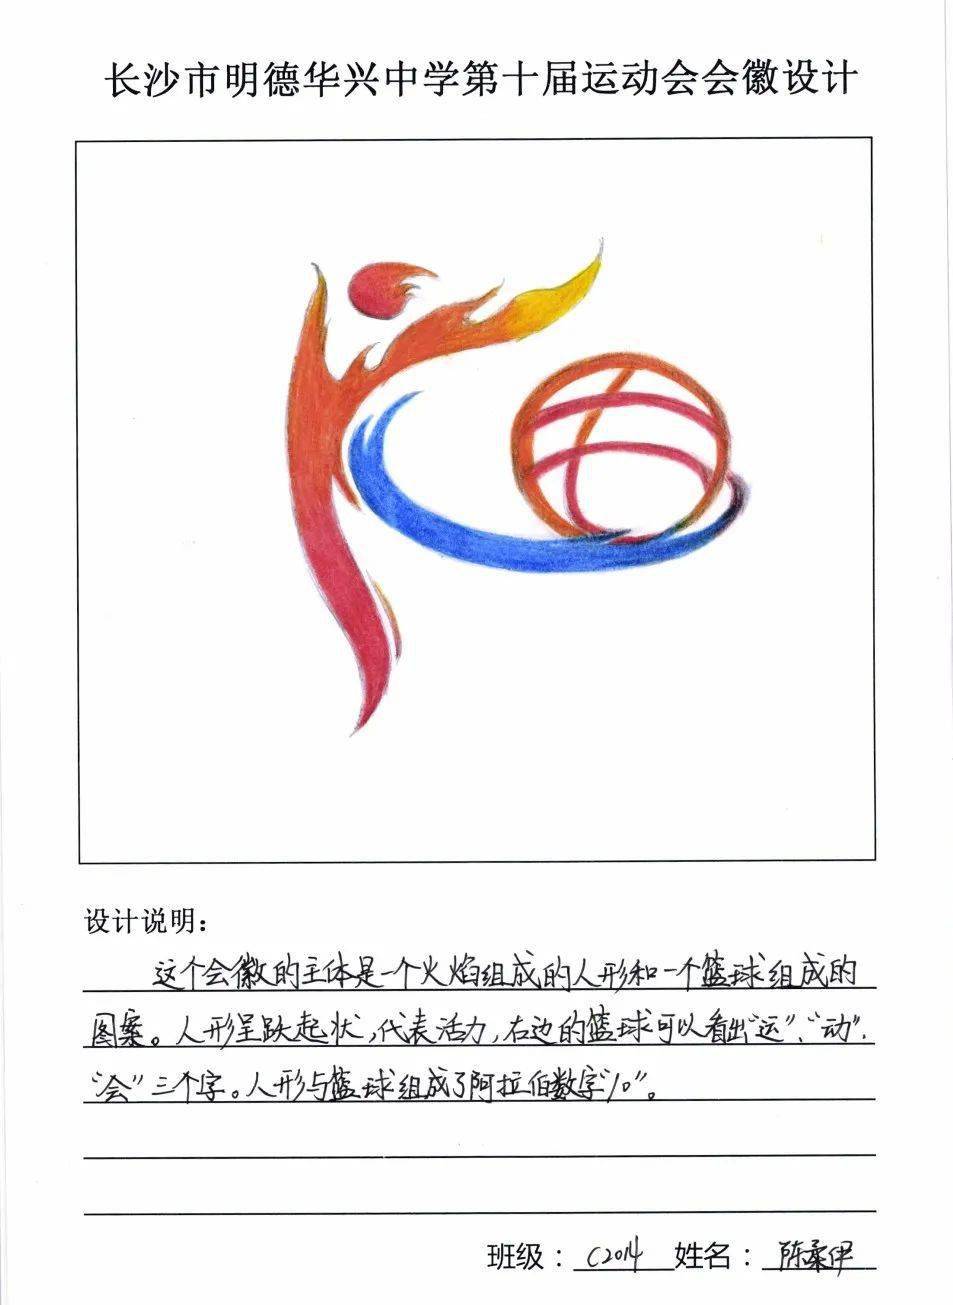 2014班陈柔伊同学作品 被选定为本届运动会会徽 并在运动会会标方阵